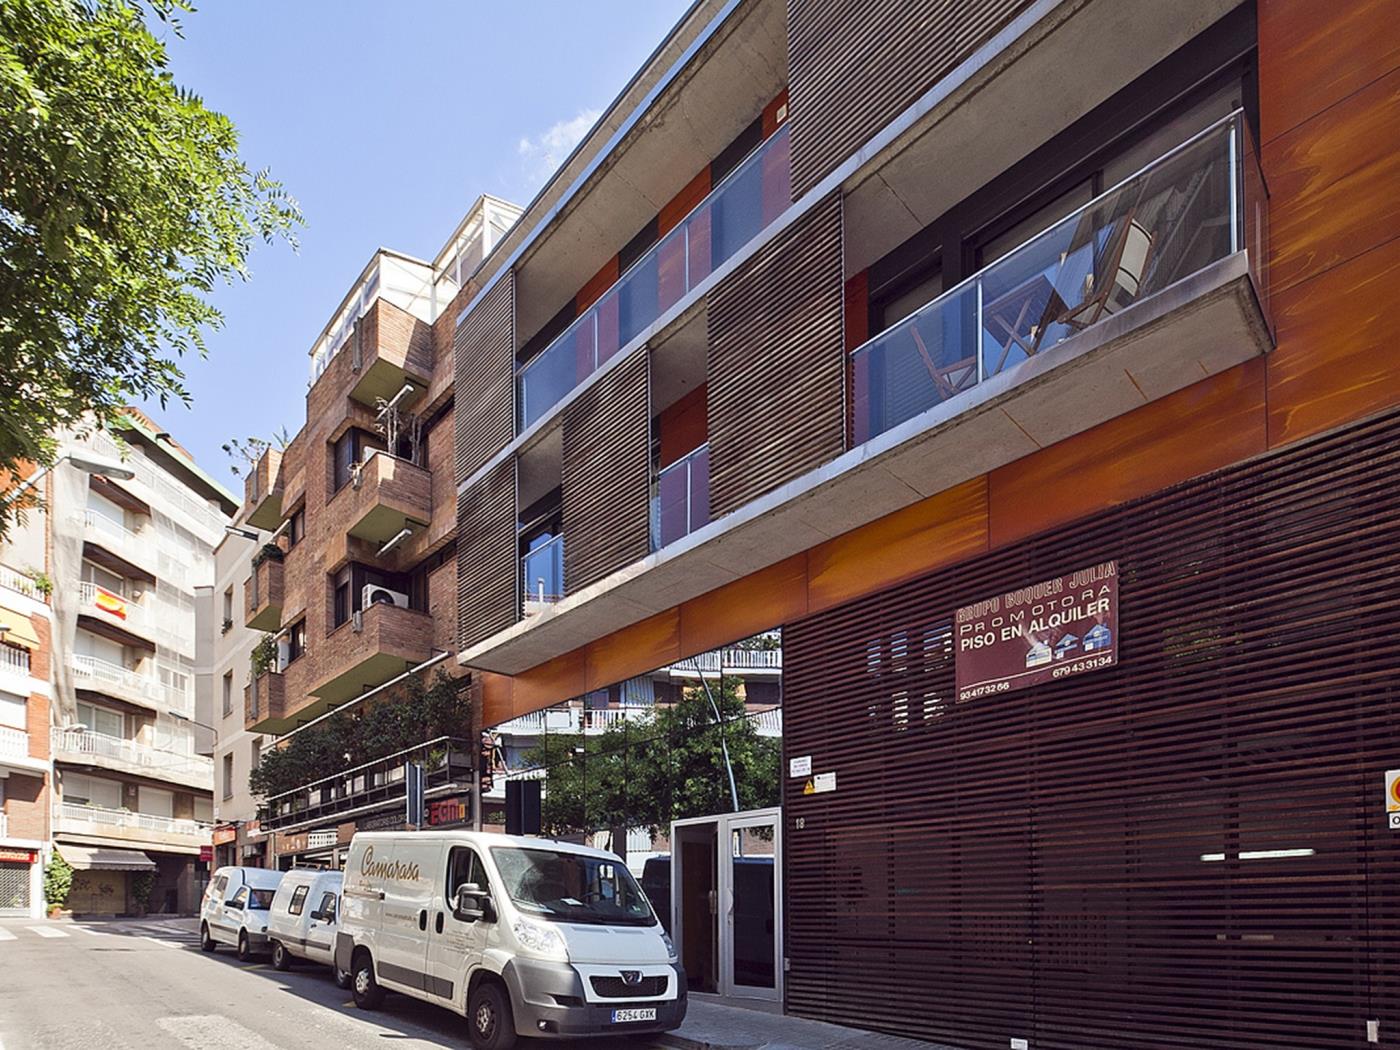 市中心的公司公寓 - My Space Barcelona 公寓